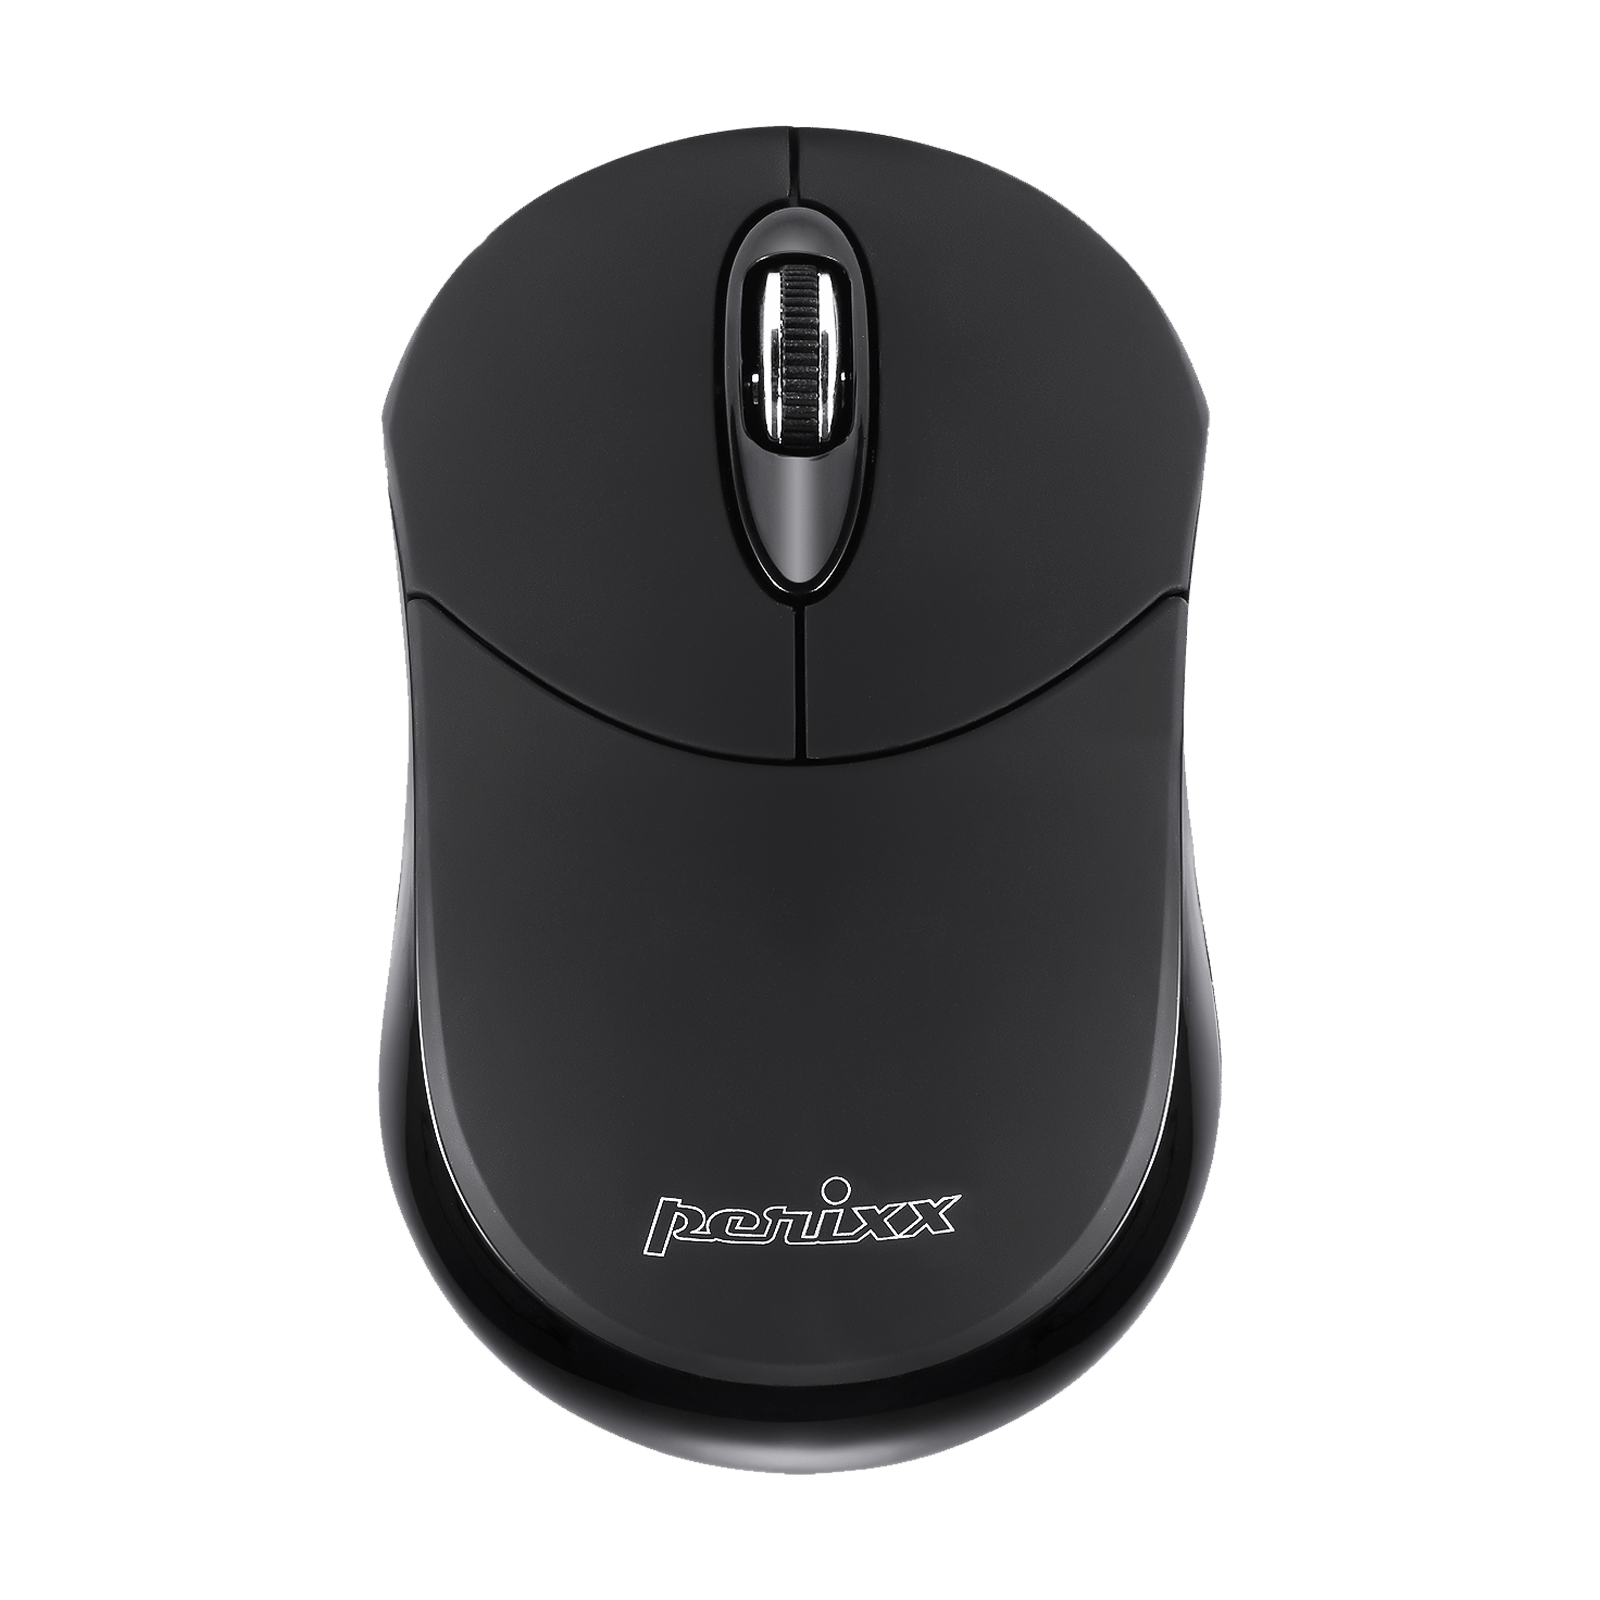 PERIMICE-802 B - Bluetooth Mini Mouse 1000 DPI - Perixx Europe